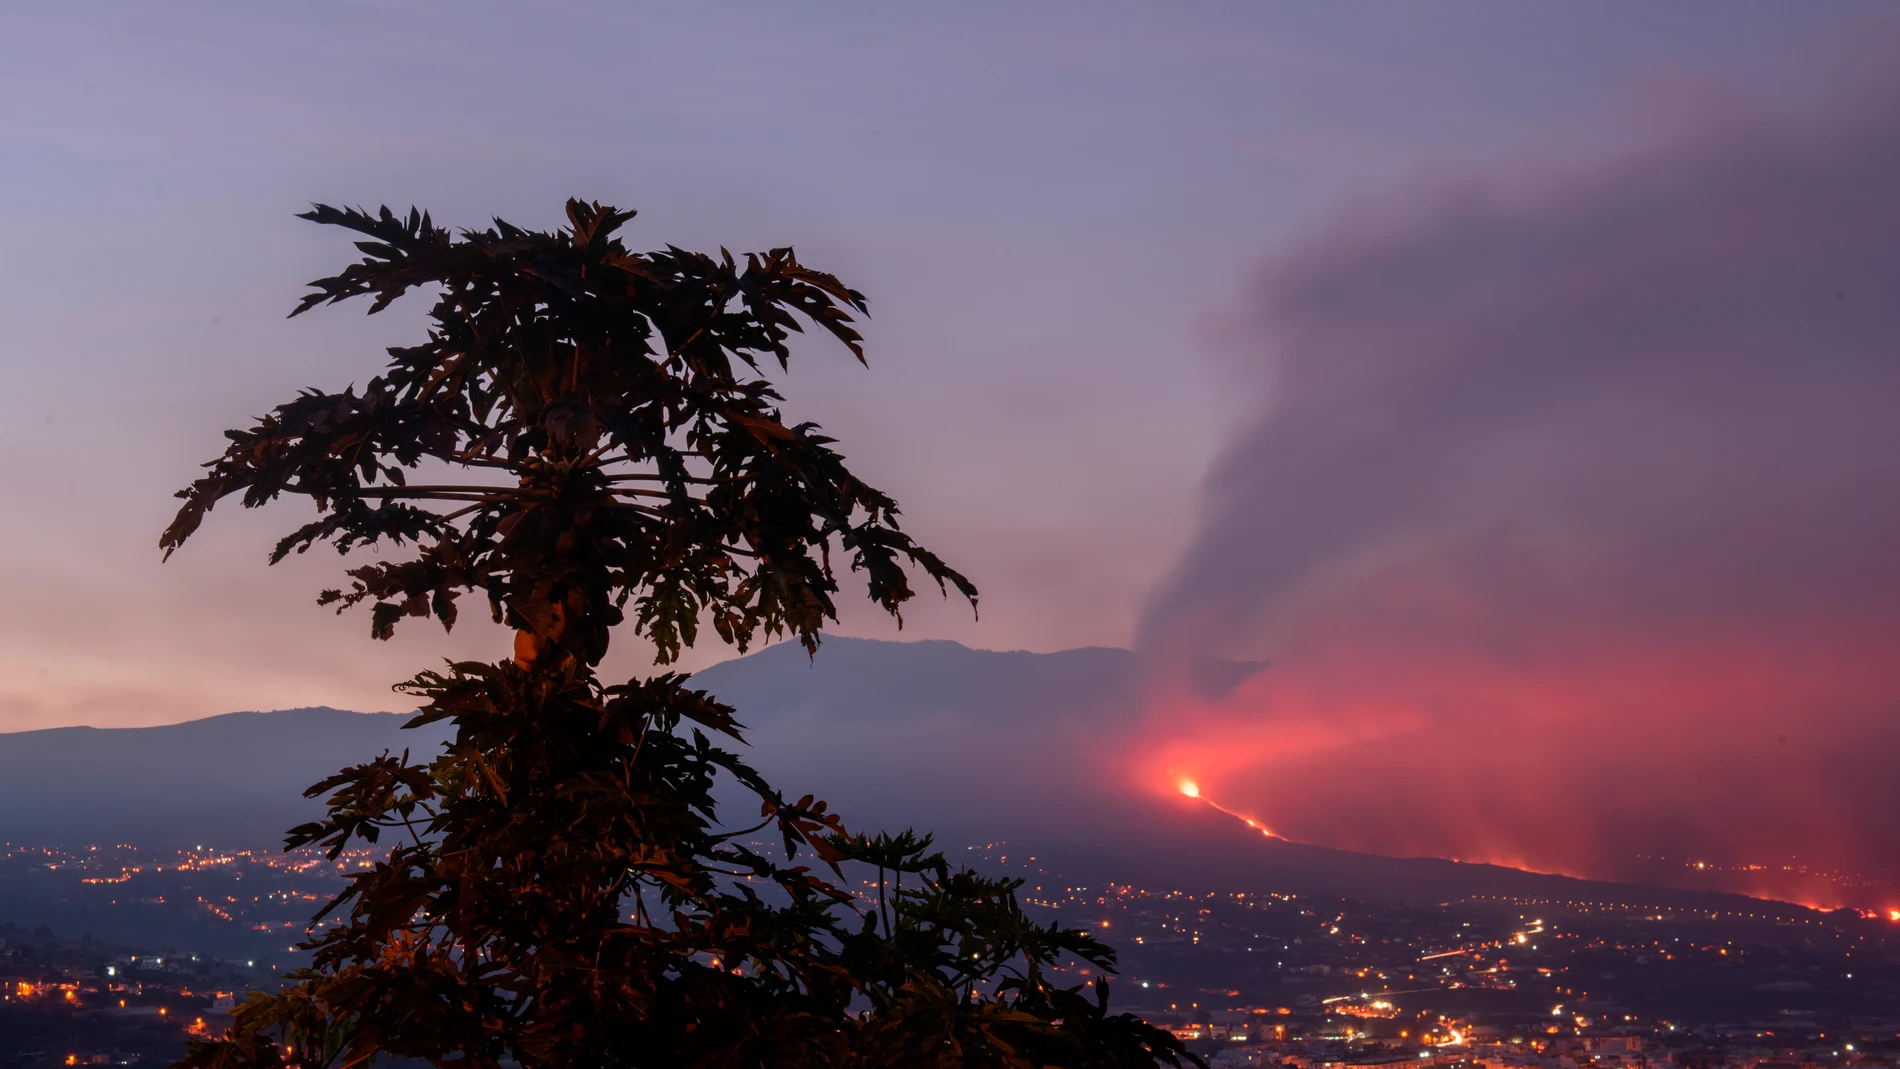 Imagen del volcán tomada al amanecer desde el Valle de Aridane.